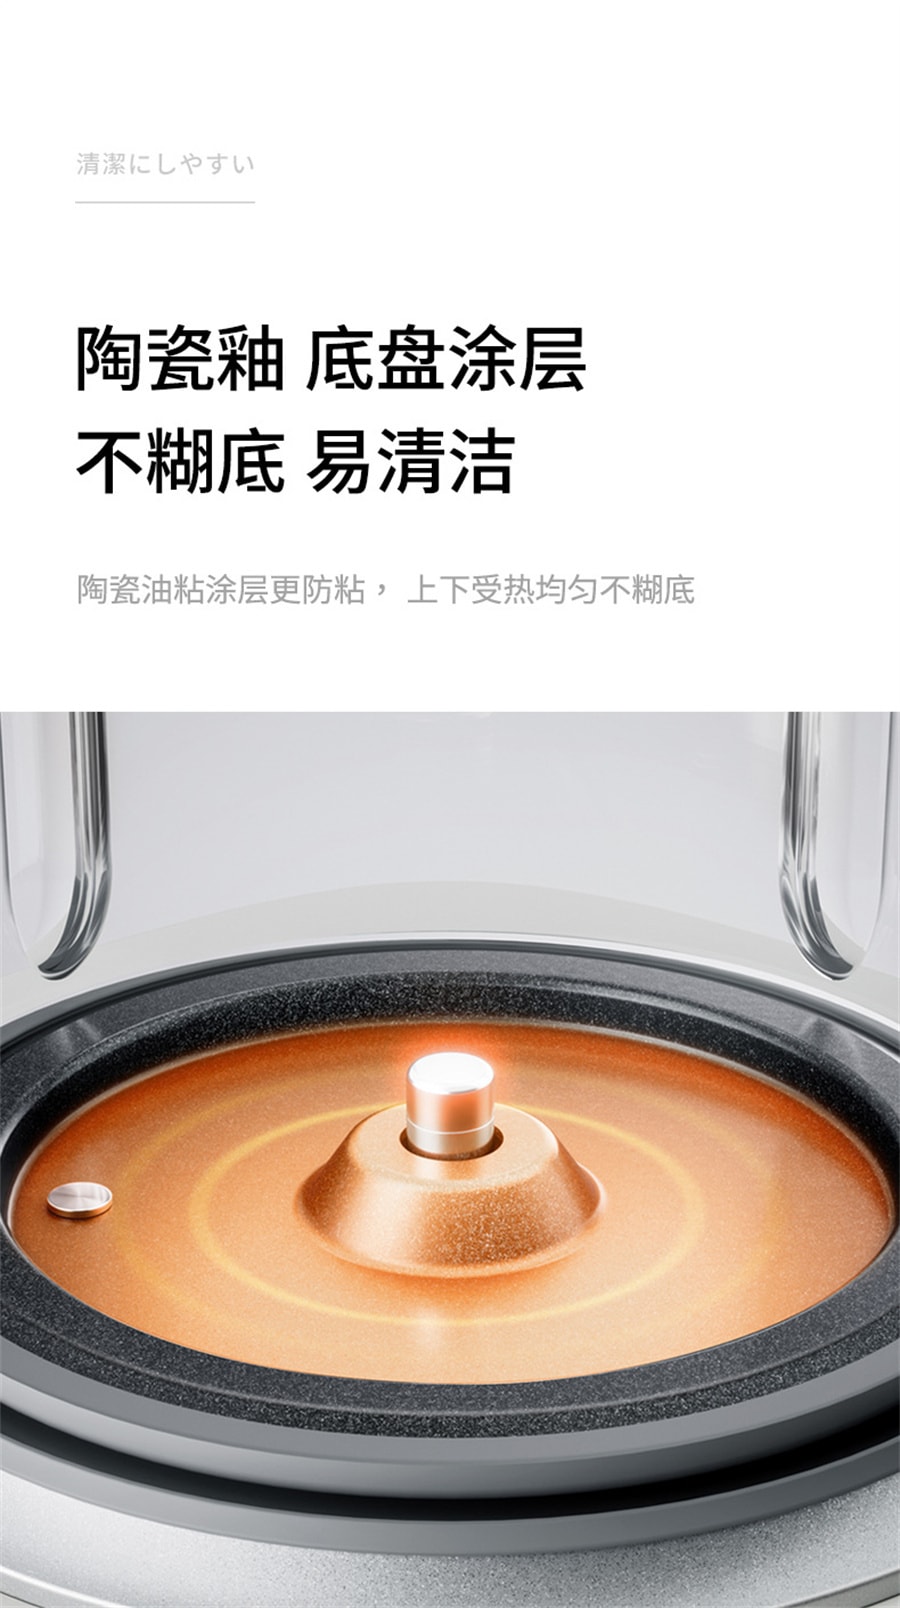 【中国直邮】亲太太 110V破壁机家用豆浆机多功能料理沙冰机自动磨粉机免滤辅食机   米白色